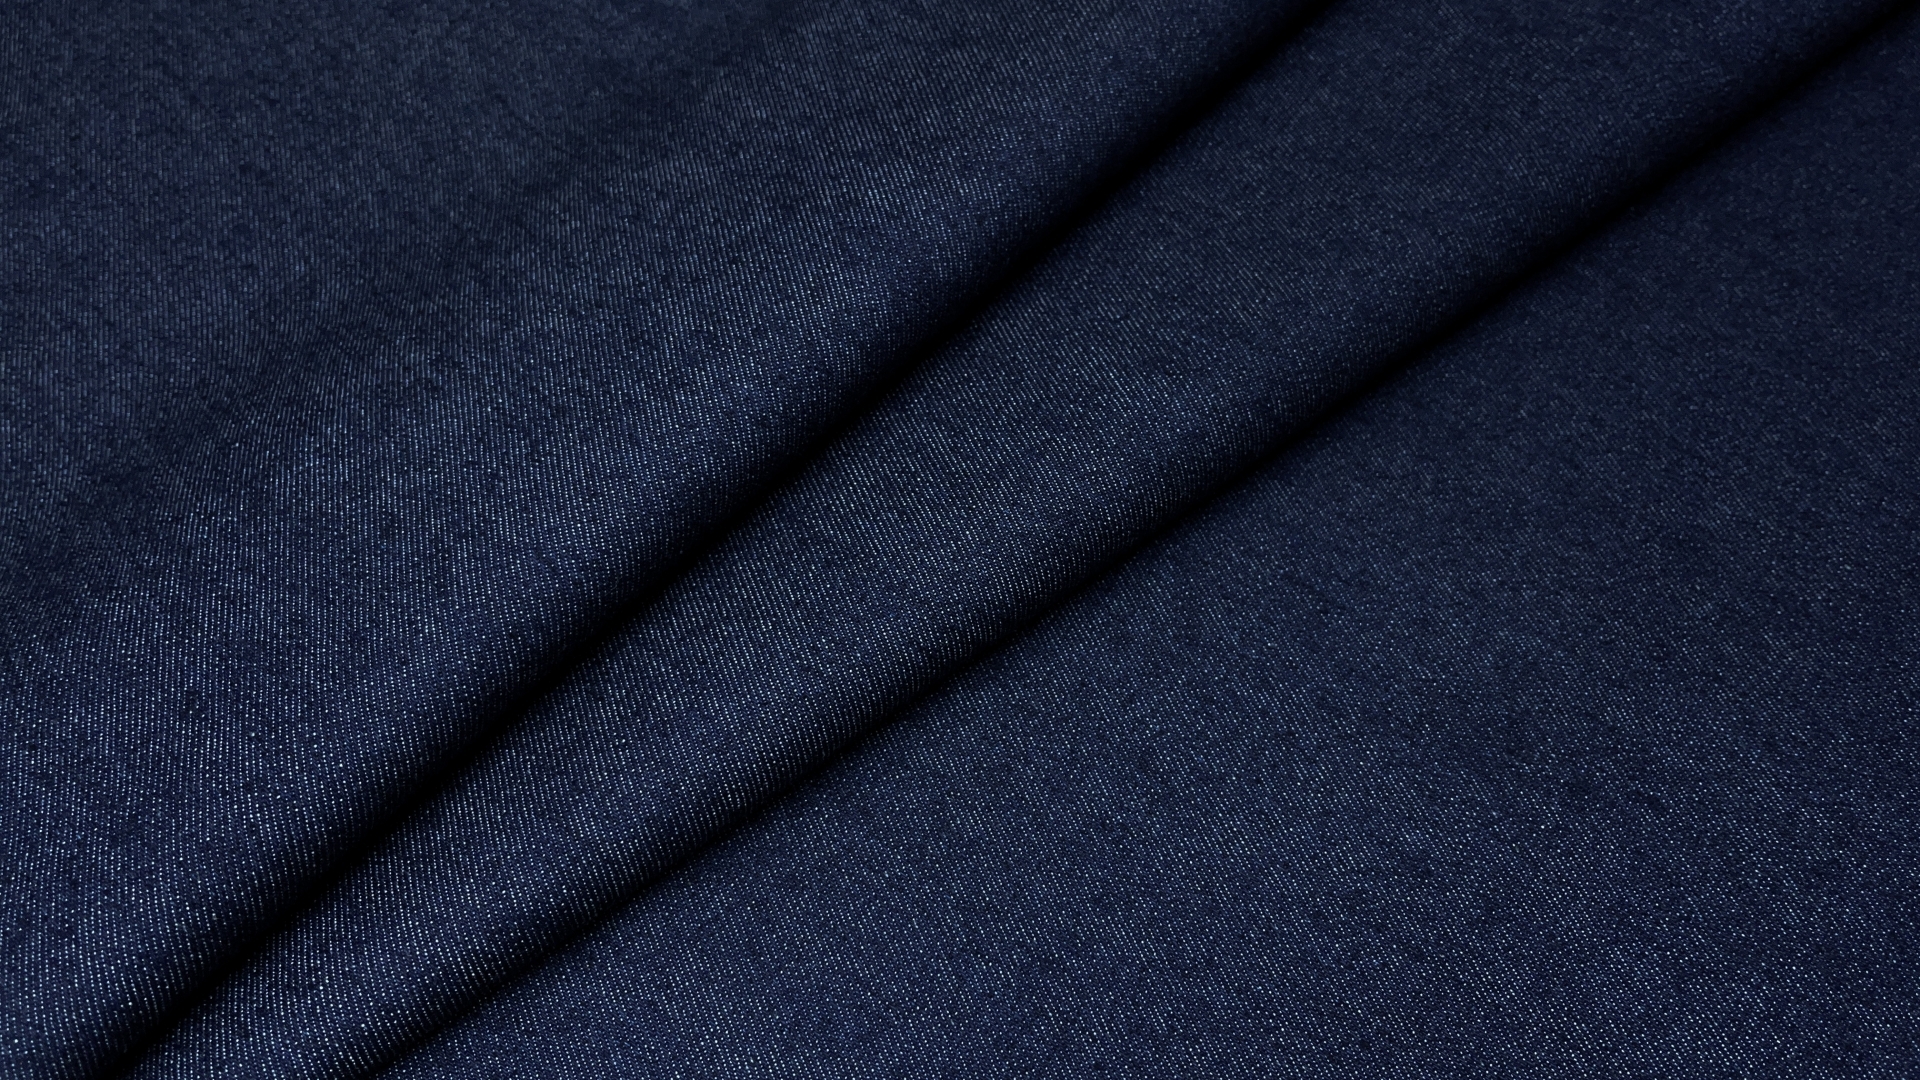 Джинса синего цвета.  Плотная, добротная, для джинсов и курток. Выработка диагональная, тактильно гладкая, без пушистых нитей. Цвет реальный на фото